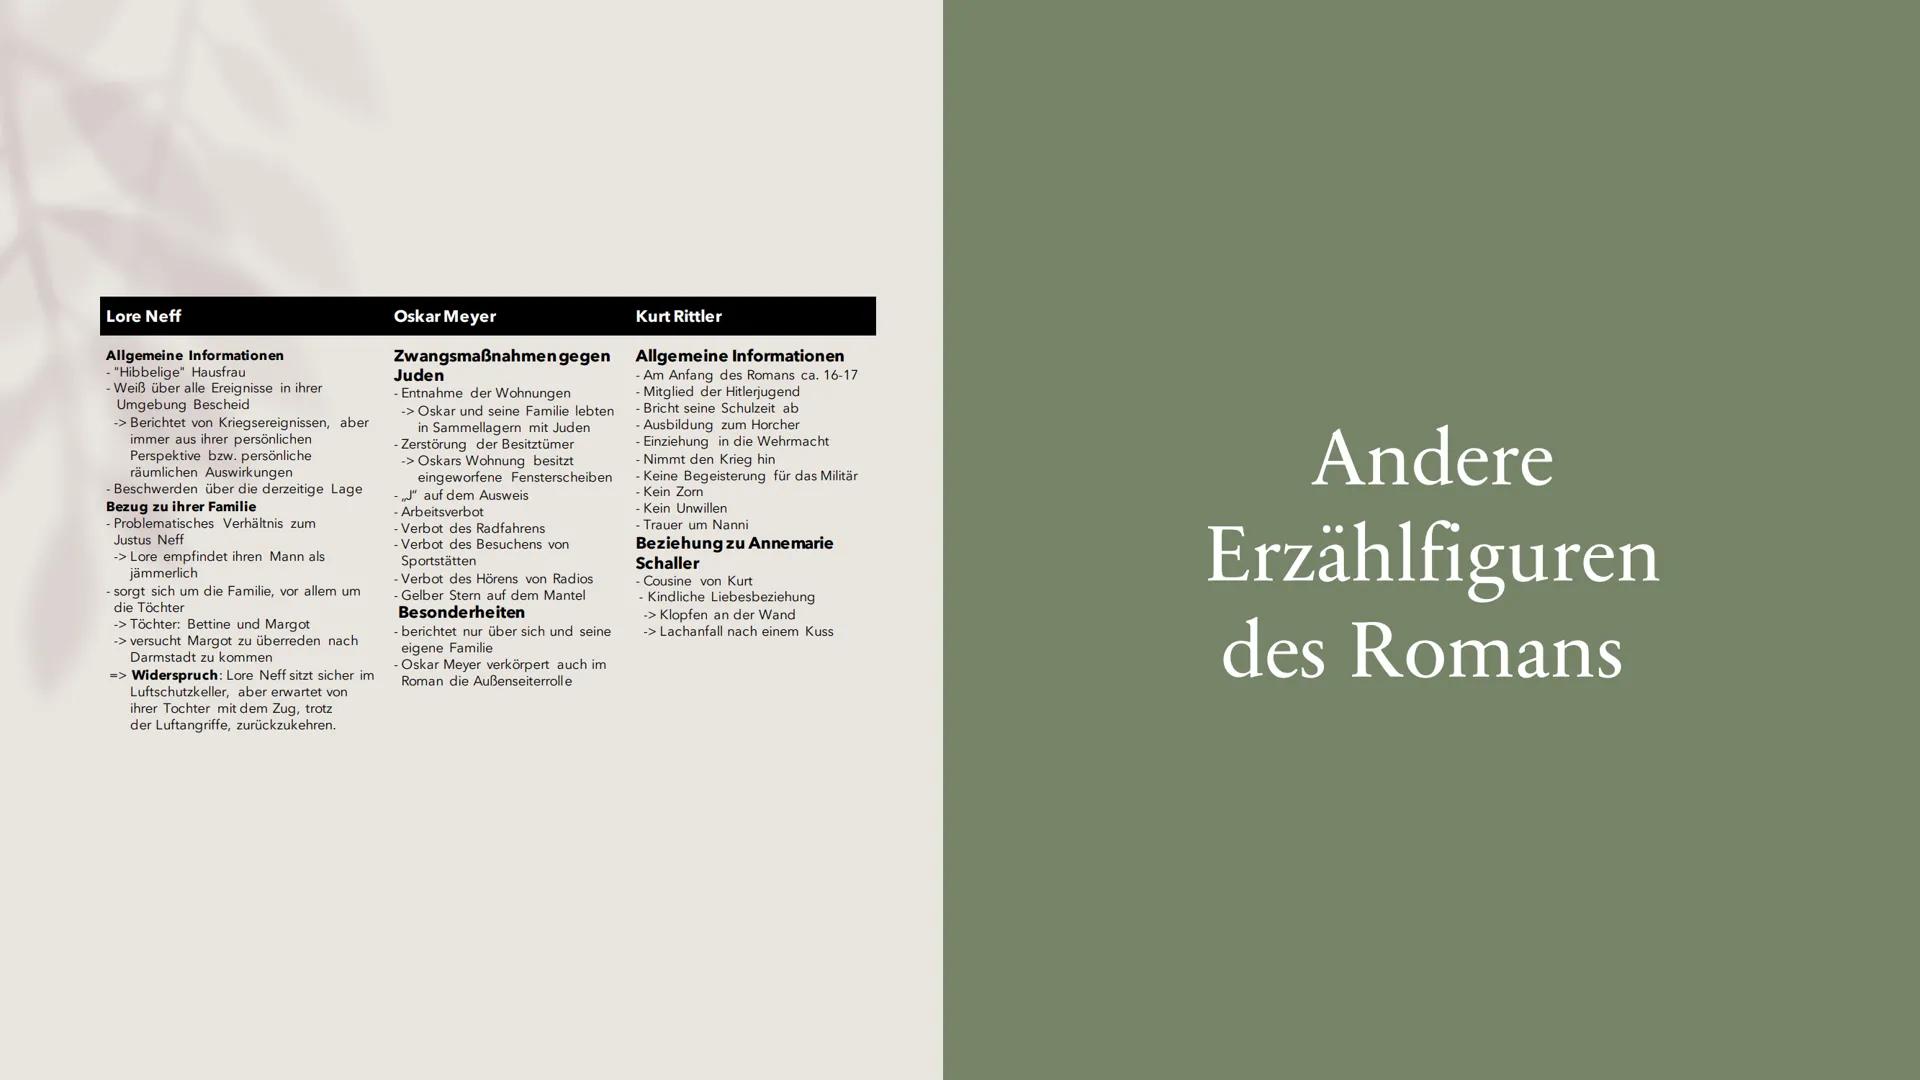 Unter uch Diacheniwallu
ROMAN
HANSER
Von Asli Aydin und Sude Kilinc
Unter der
Drachenwand
Essenzielle Inhaltsbereiche
des Gesamtwerkes Thema